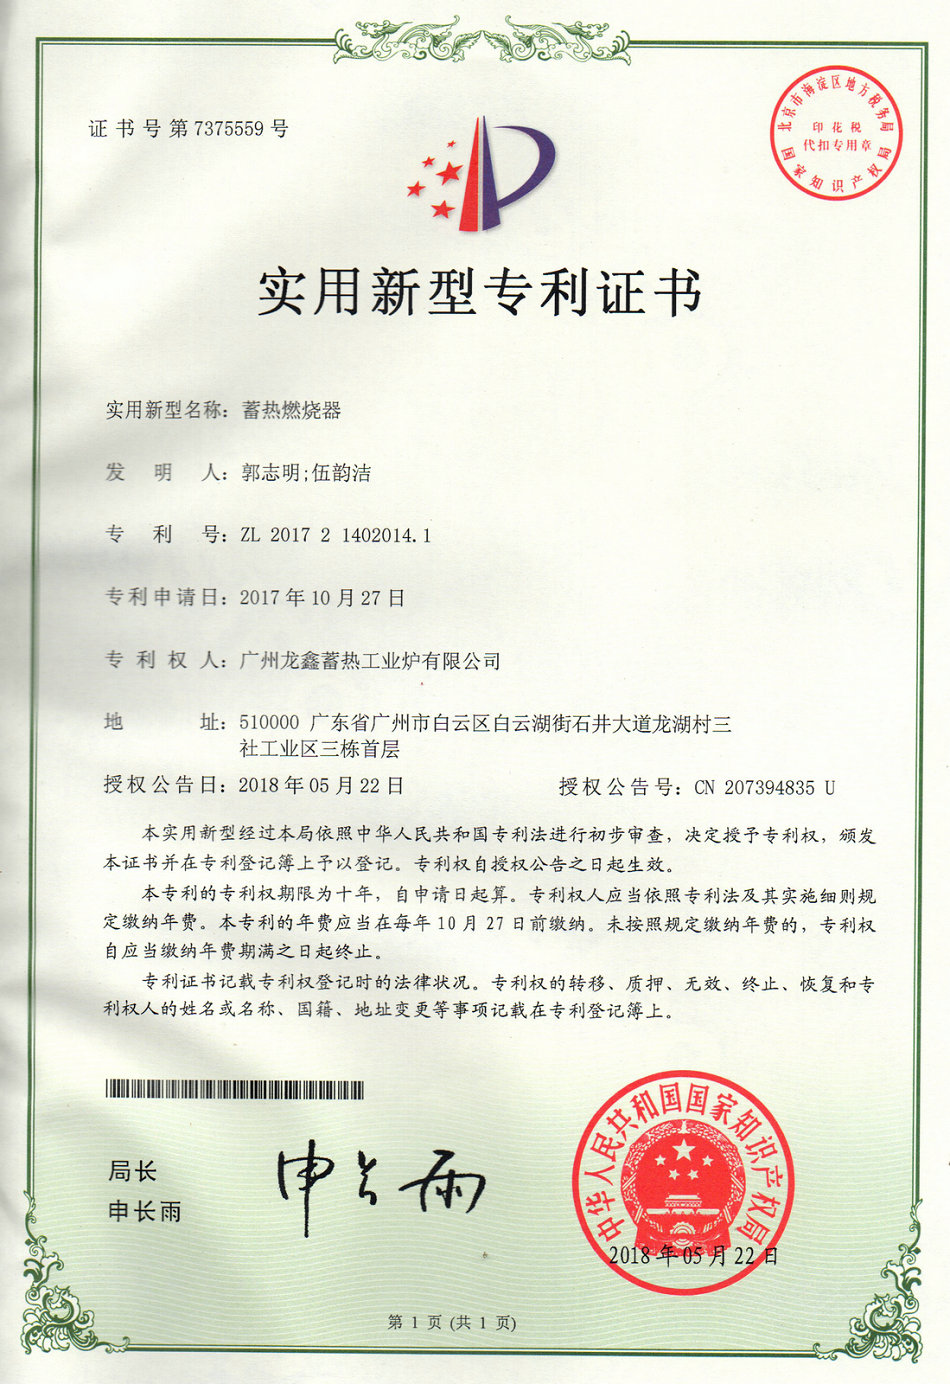 Patent certificate HTAC